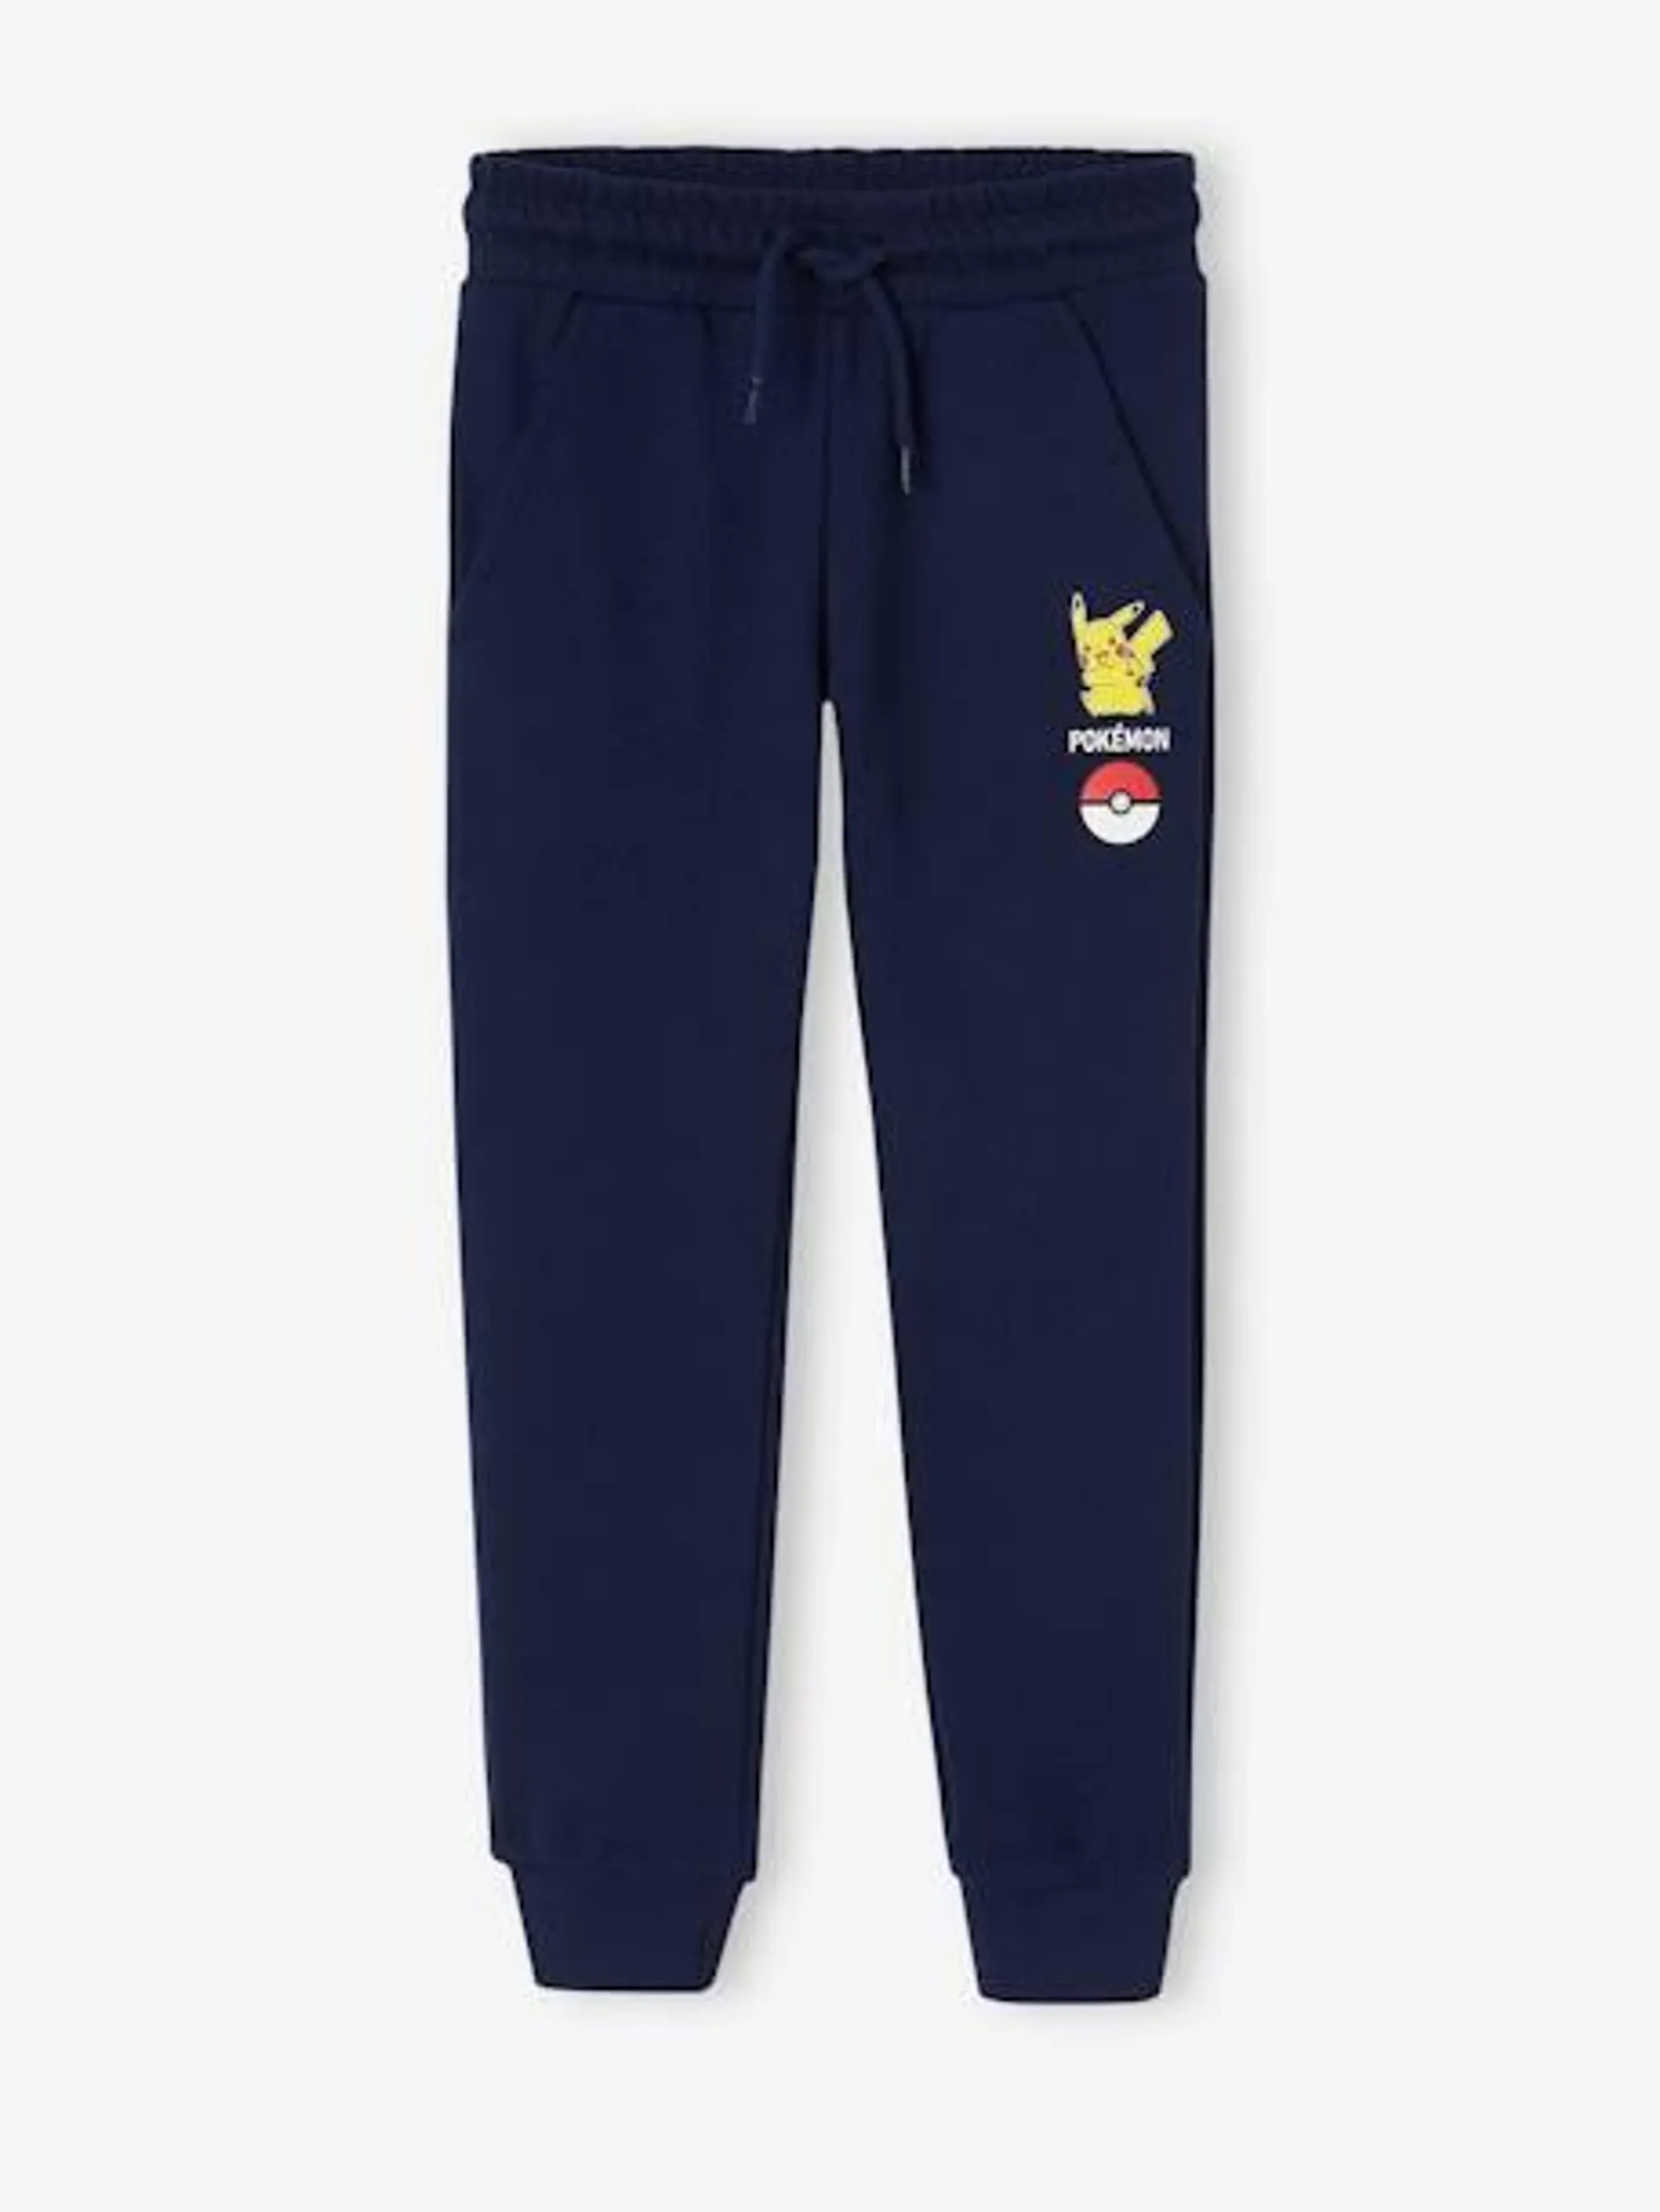 Pantalon jogging Pokemon® garçon - marine